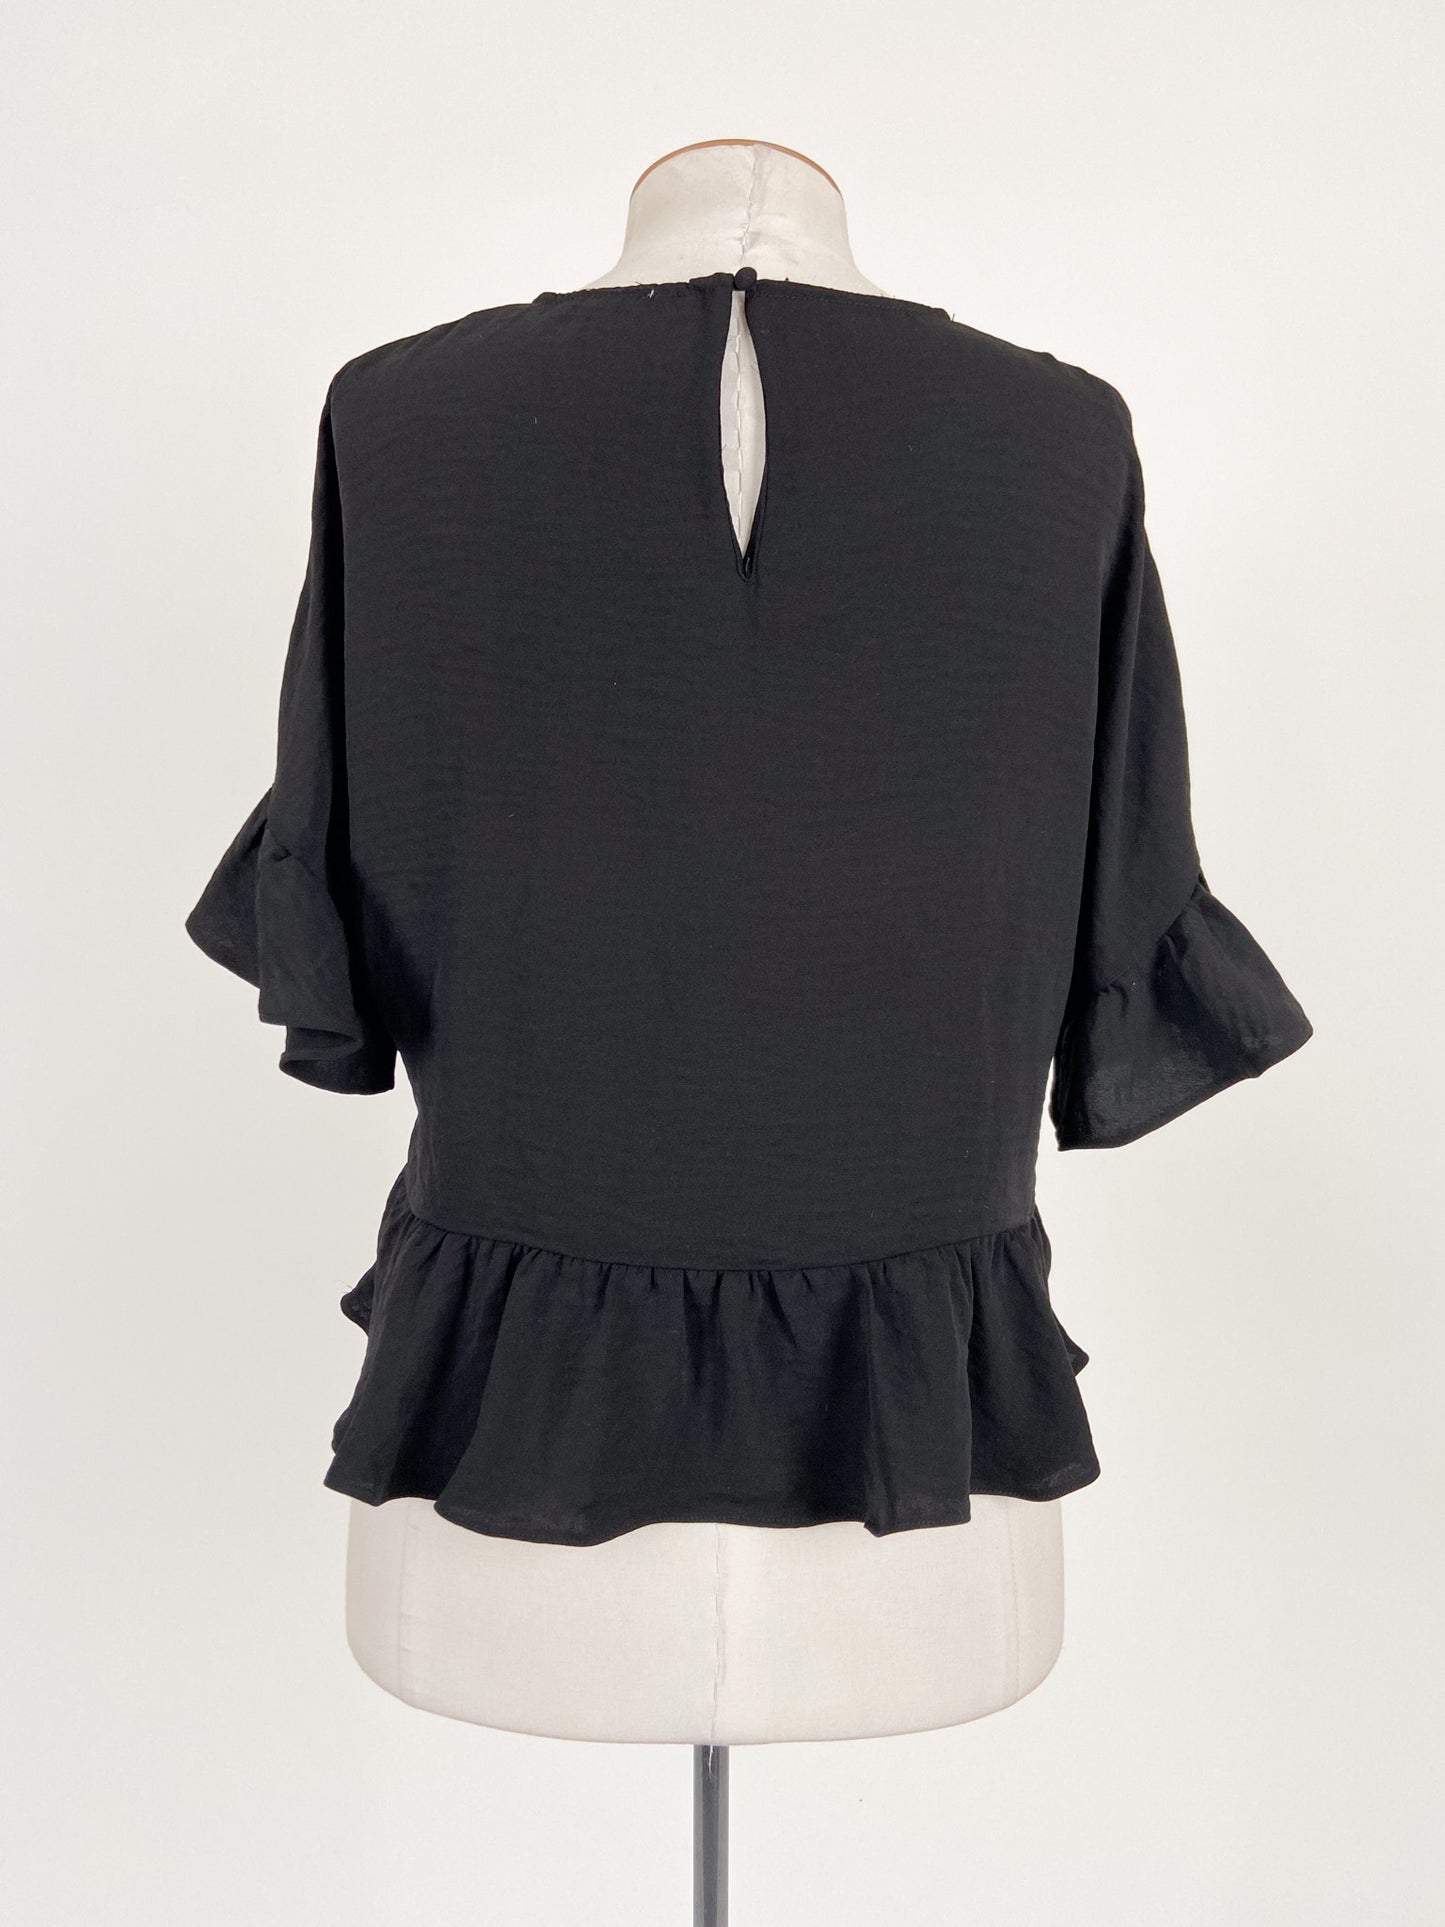 Tussah | Black Workwear Top | Size 10